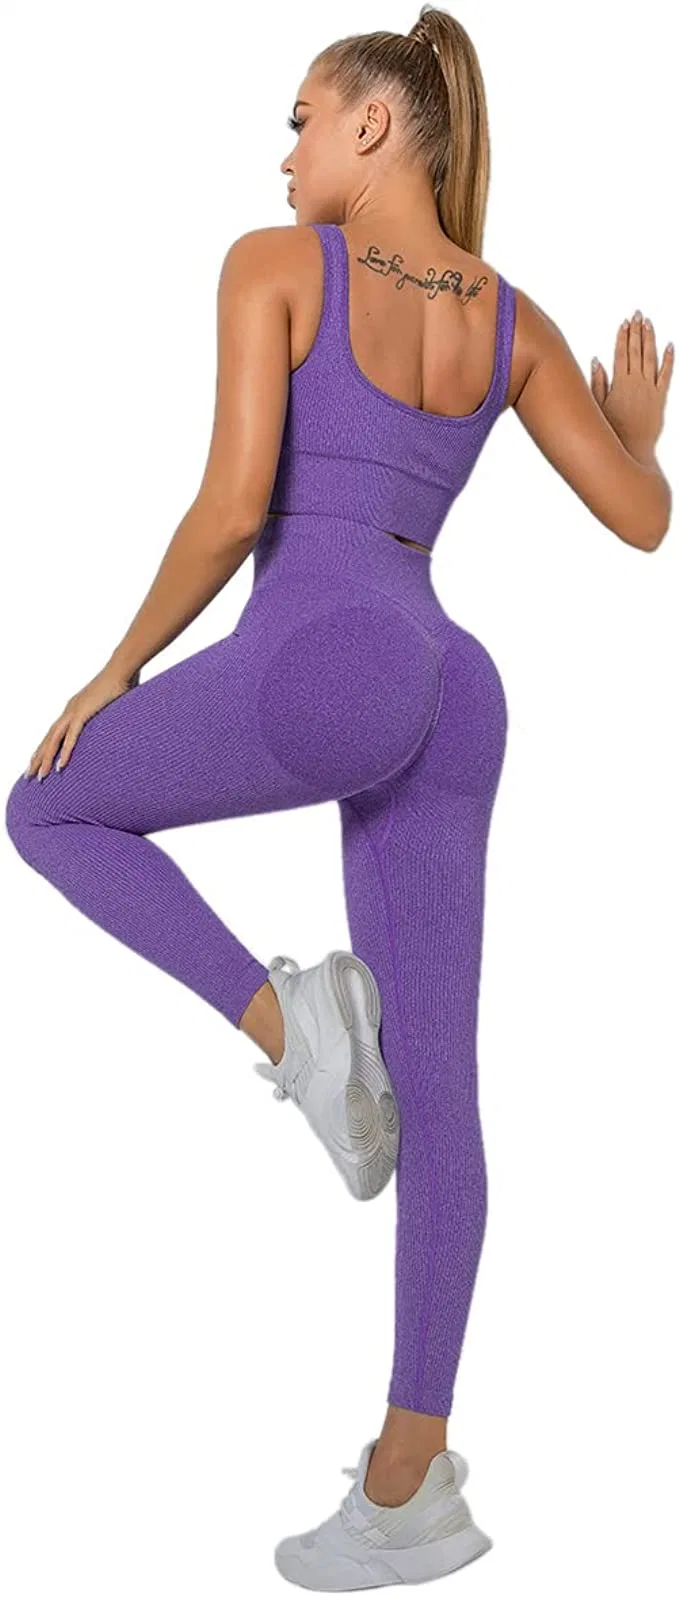 Fitness Gym Wear Yoga Bekleidung Sportbekleidung für Frauen